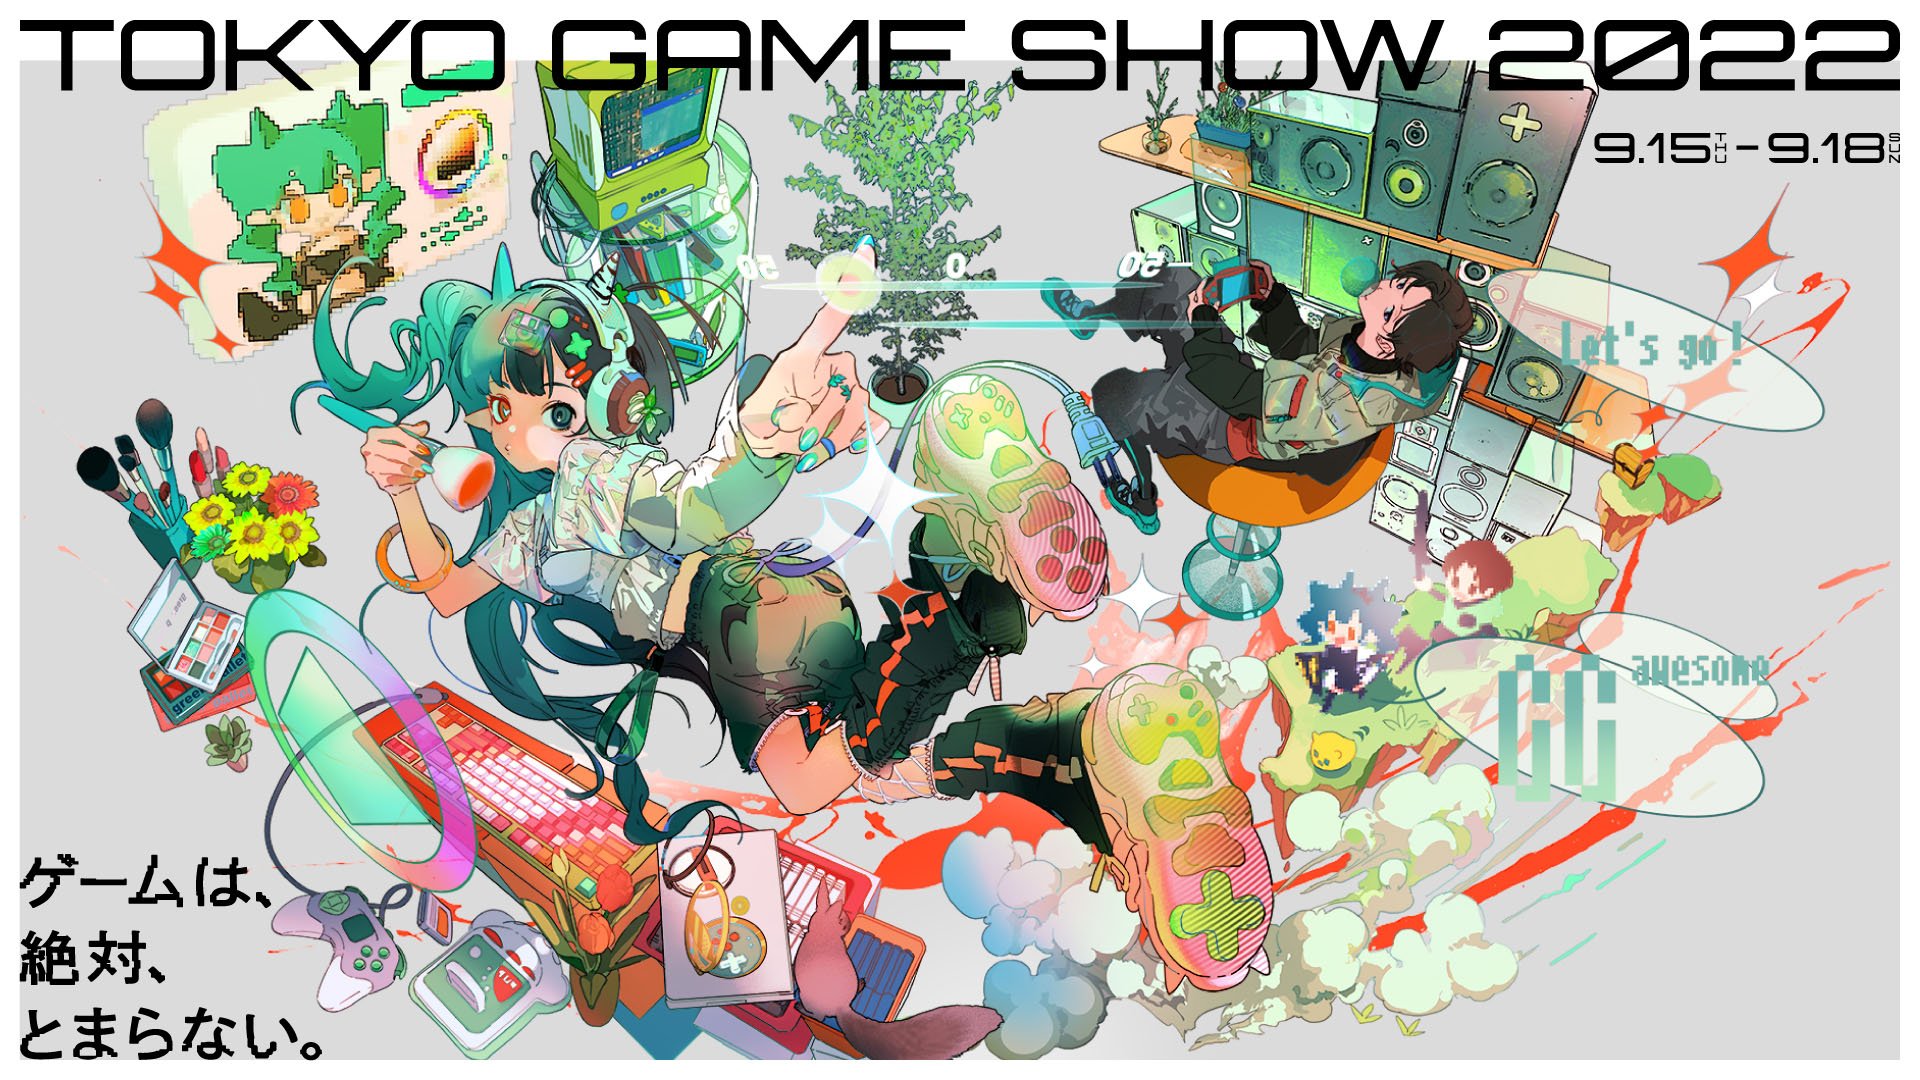 Ir atklāts Tokyo Game Show 2022 galvenais vizuālais tēls